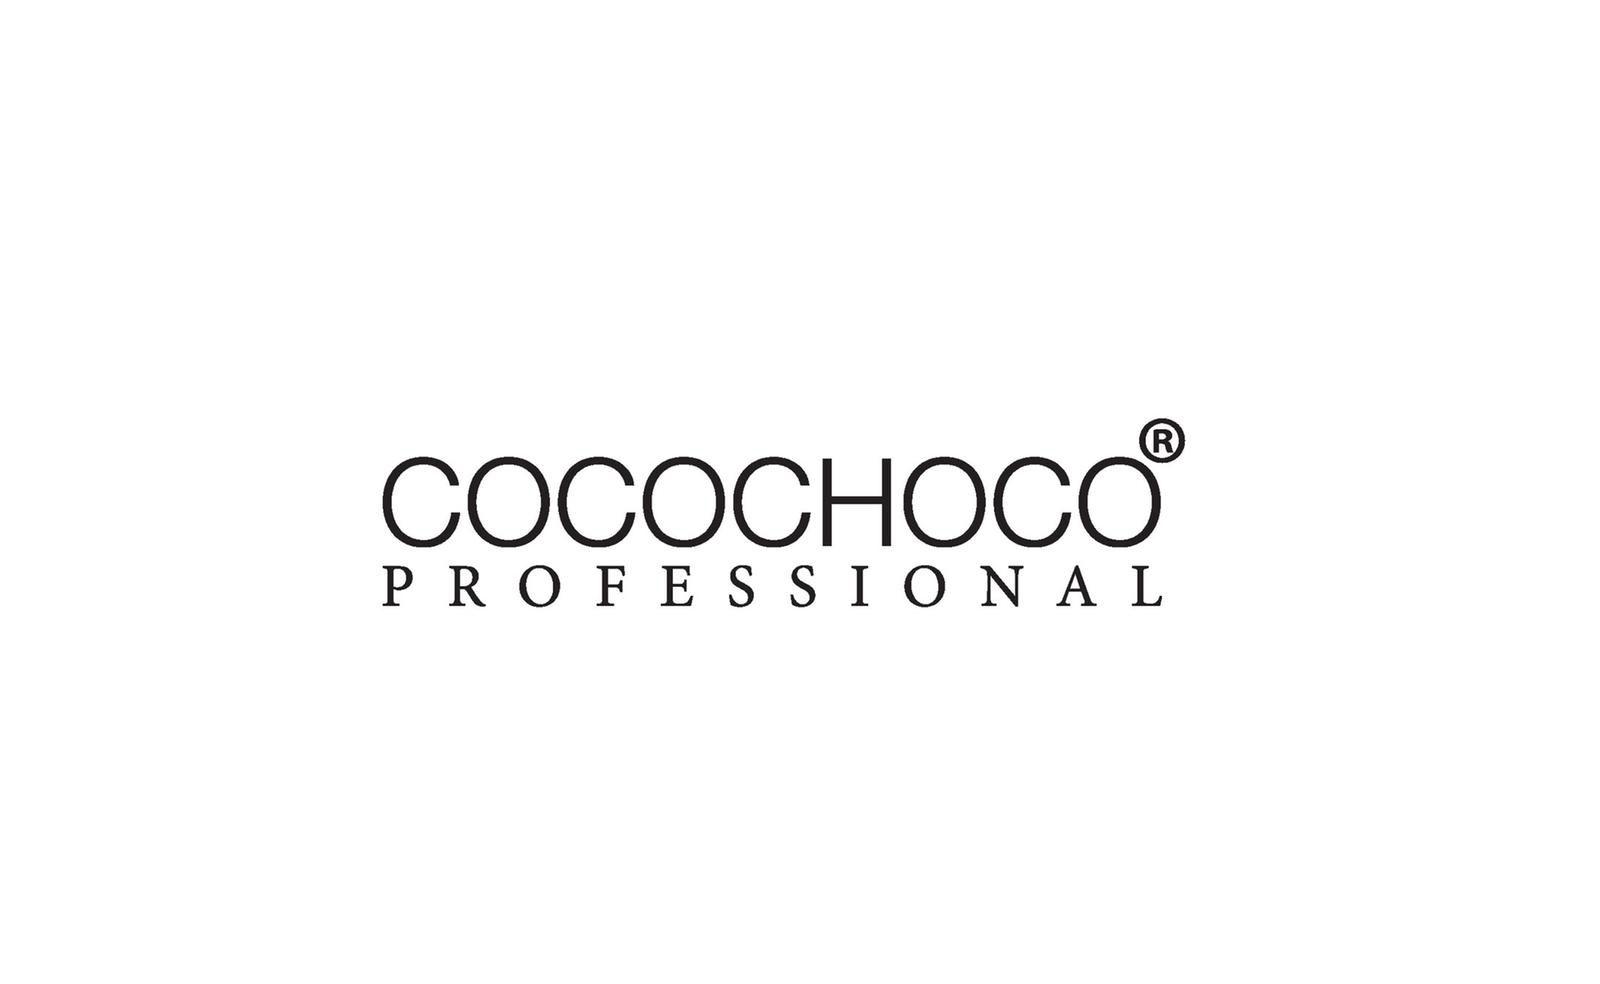 Coccochocco